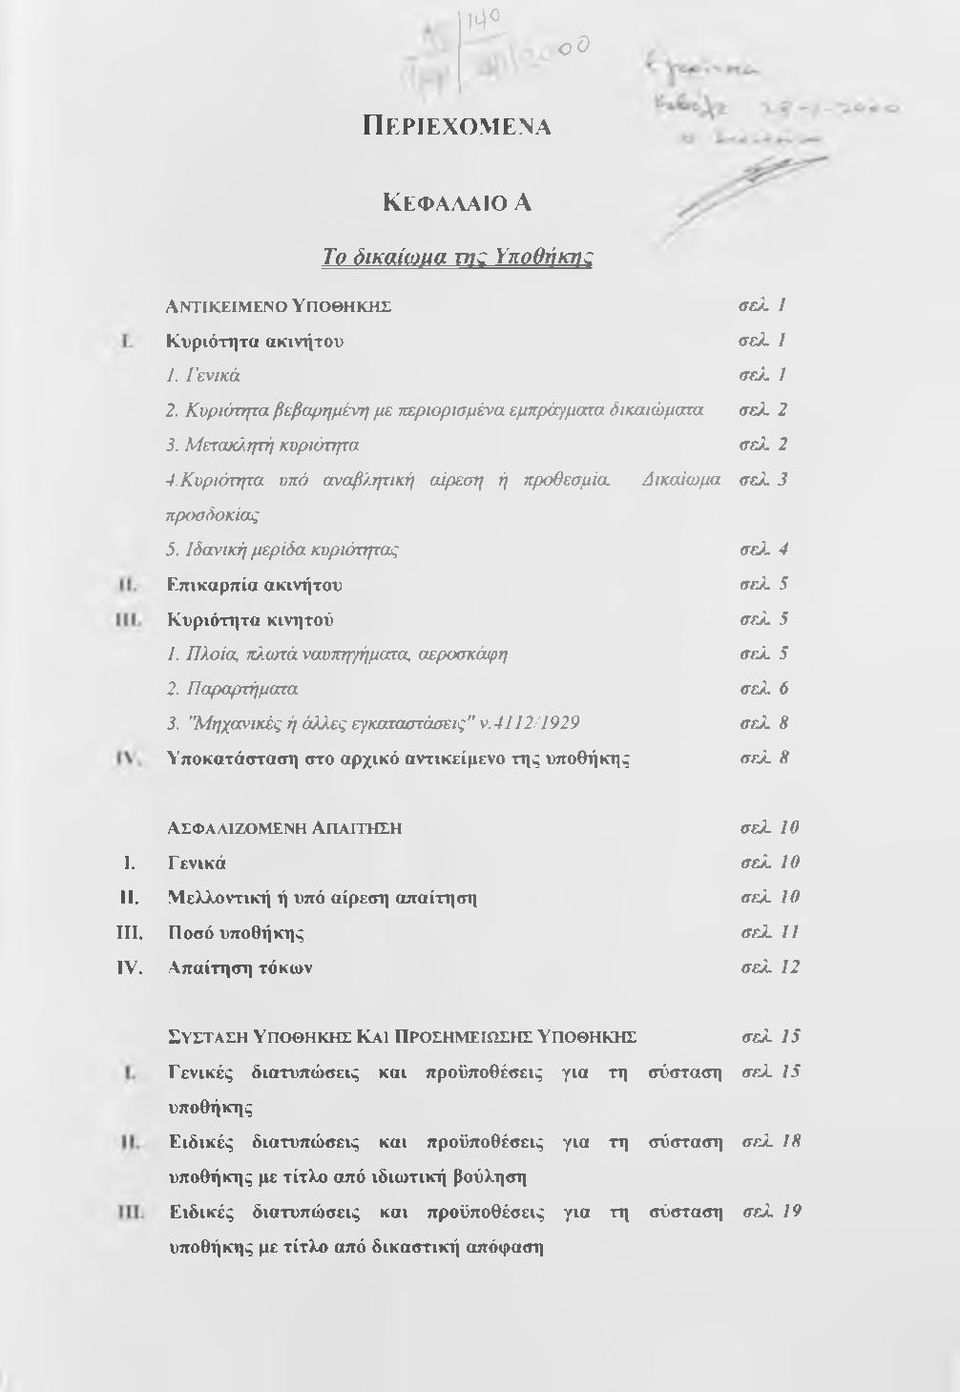 Πλοία πλωτά ναυπηγήματα αεροσκάφη 2. Παραρτήματα 3. "Μηχανικές ή άλλες εγκαταστάσεις" ν.4112/1929 Υποκατάσταση στο αρχικό αντικείμενο της υποθήκης σελ 4 σελ 5 σελ.